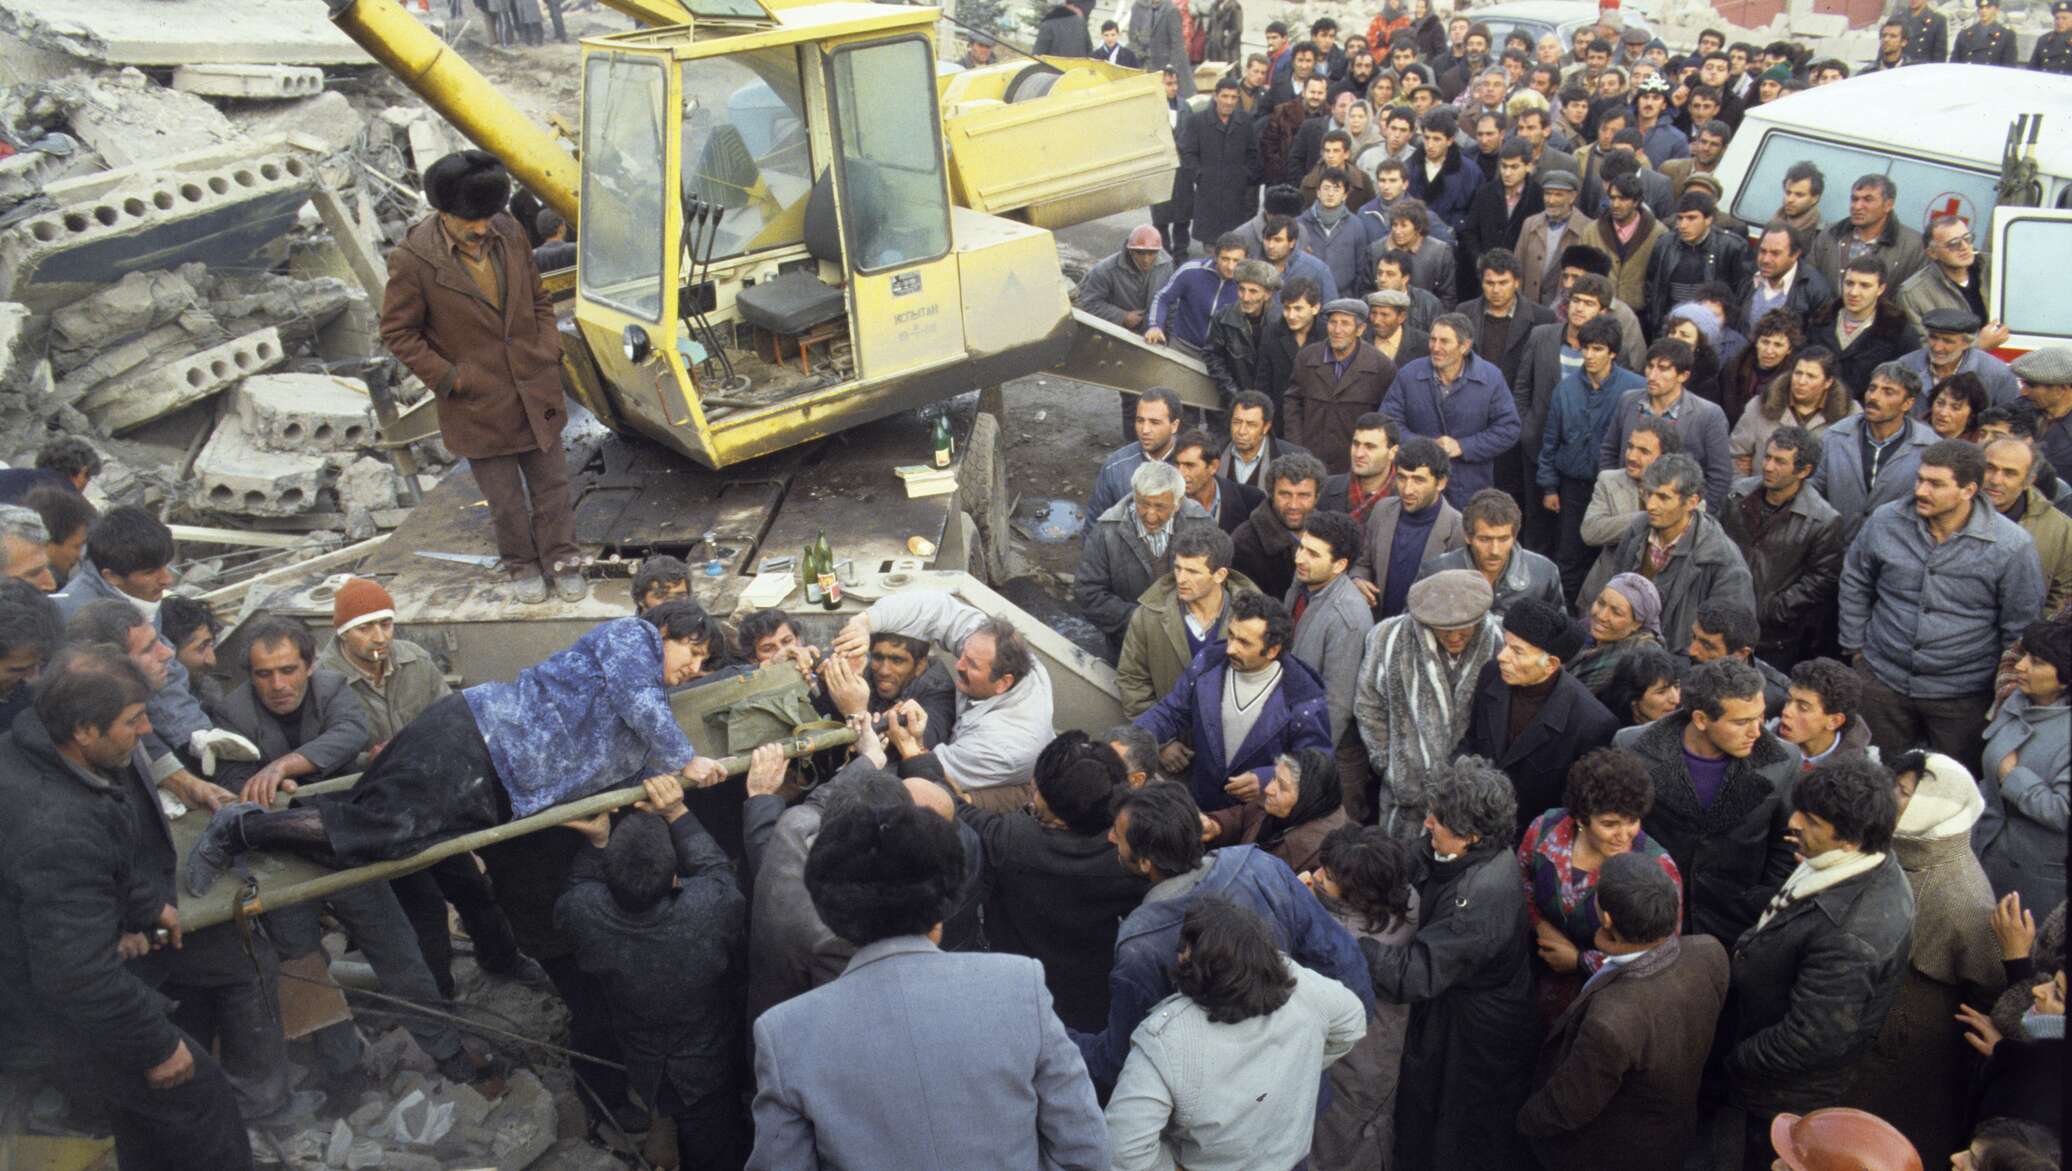 В каком году было сильное землетрясение. Армения Спитак землетрясение 1988 город. Землетрясение в Армении в 1988. Землетрясение 7 декабря 1988 Армения Ленинакан. 7 Декабря 1988 землетрясение в Армении.